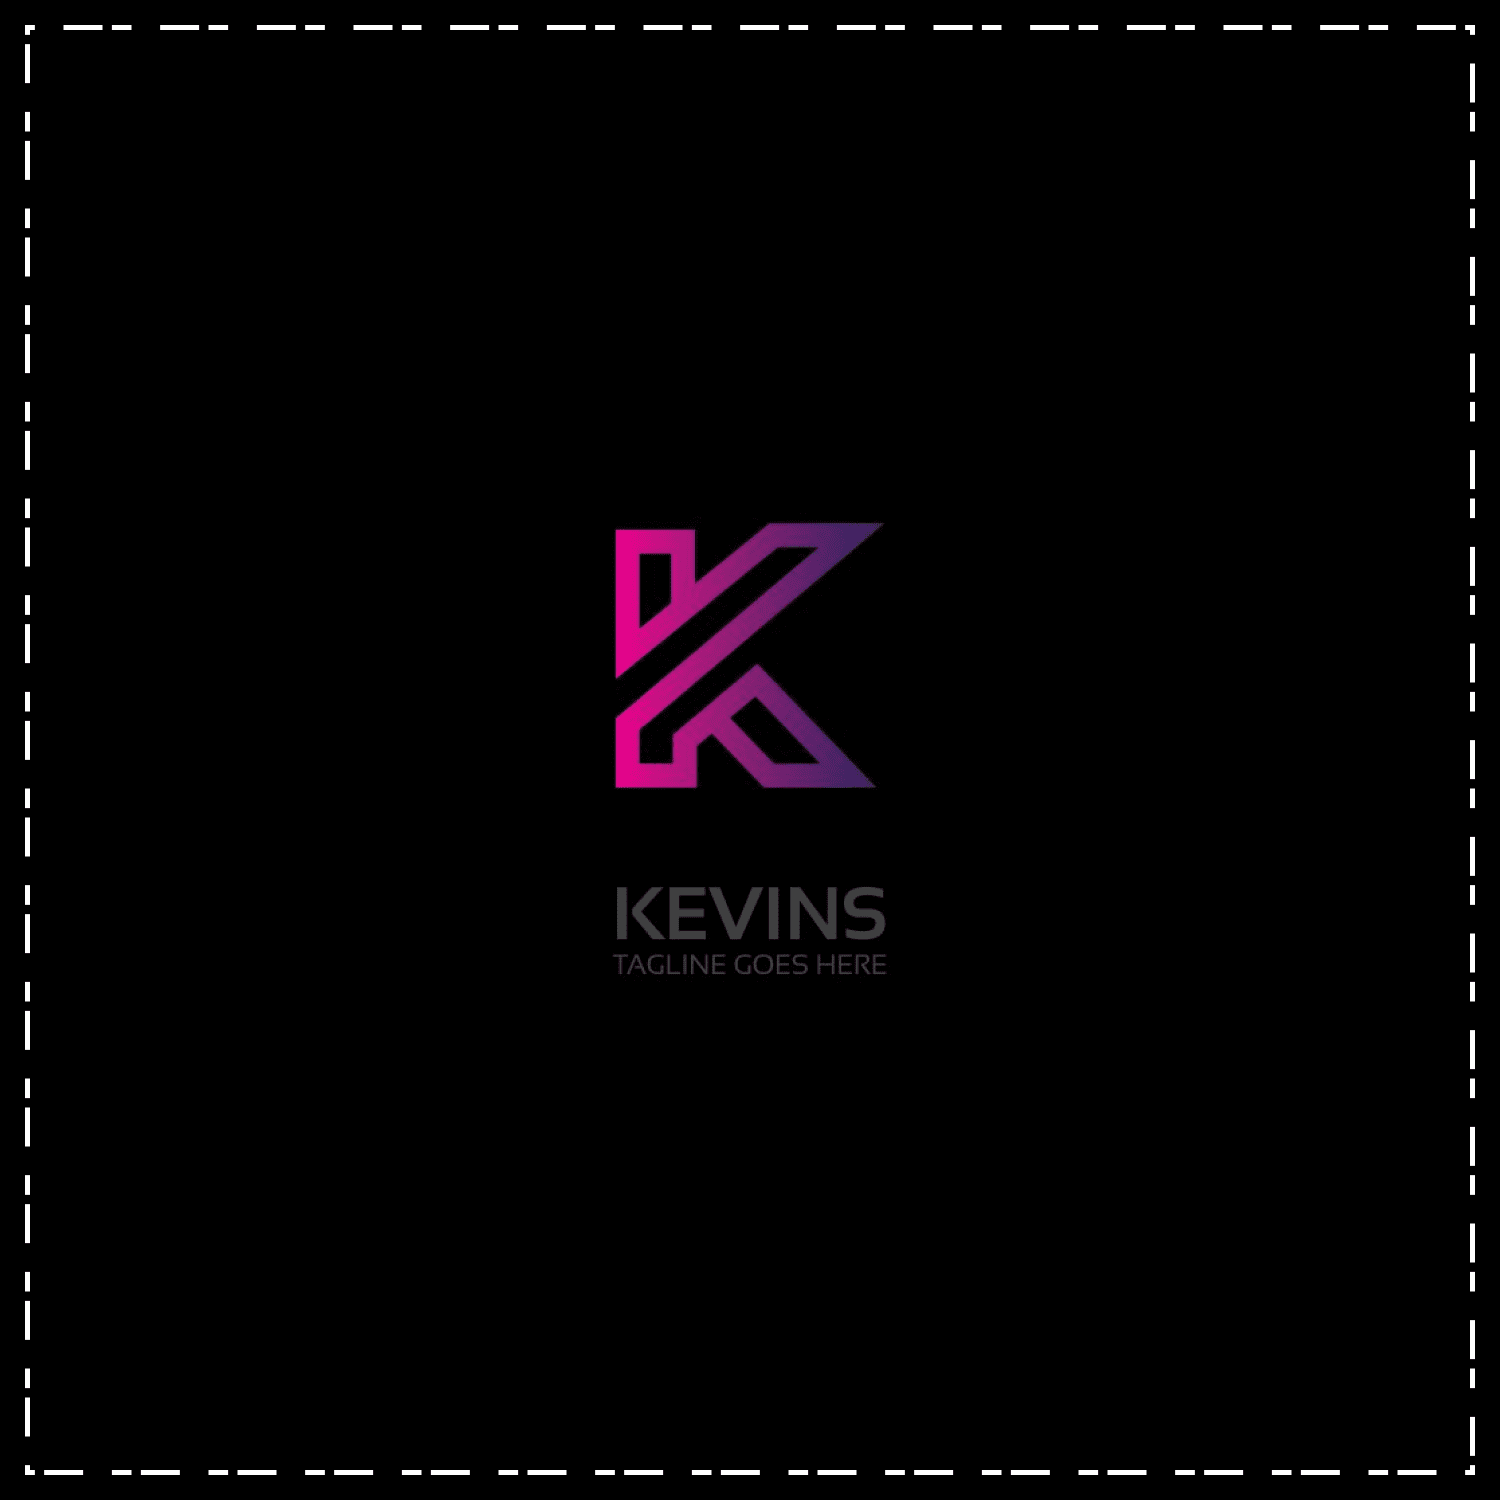 Letter K Logo cover,